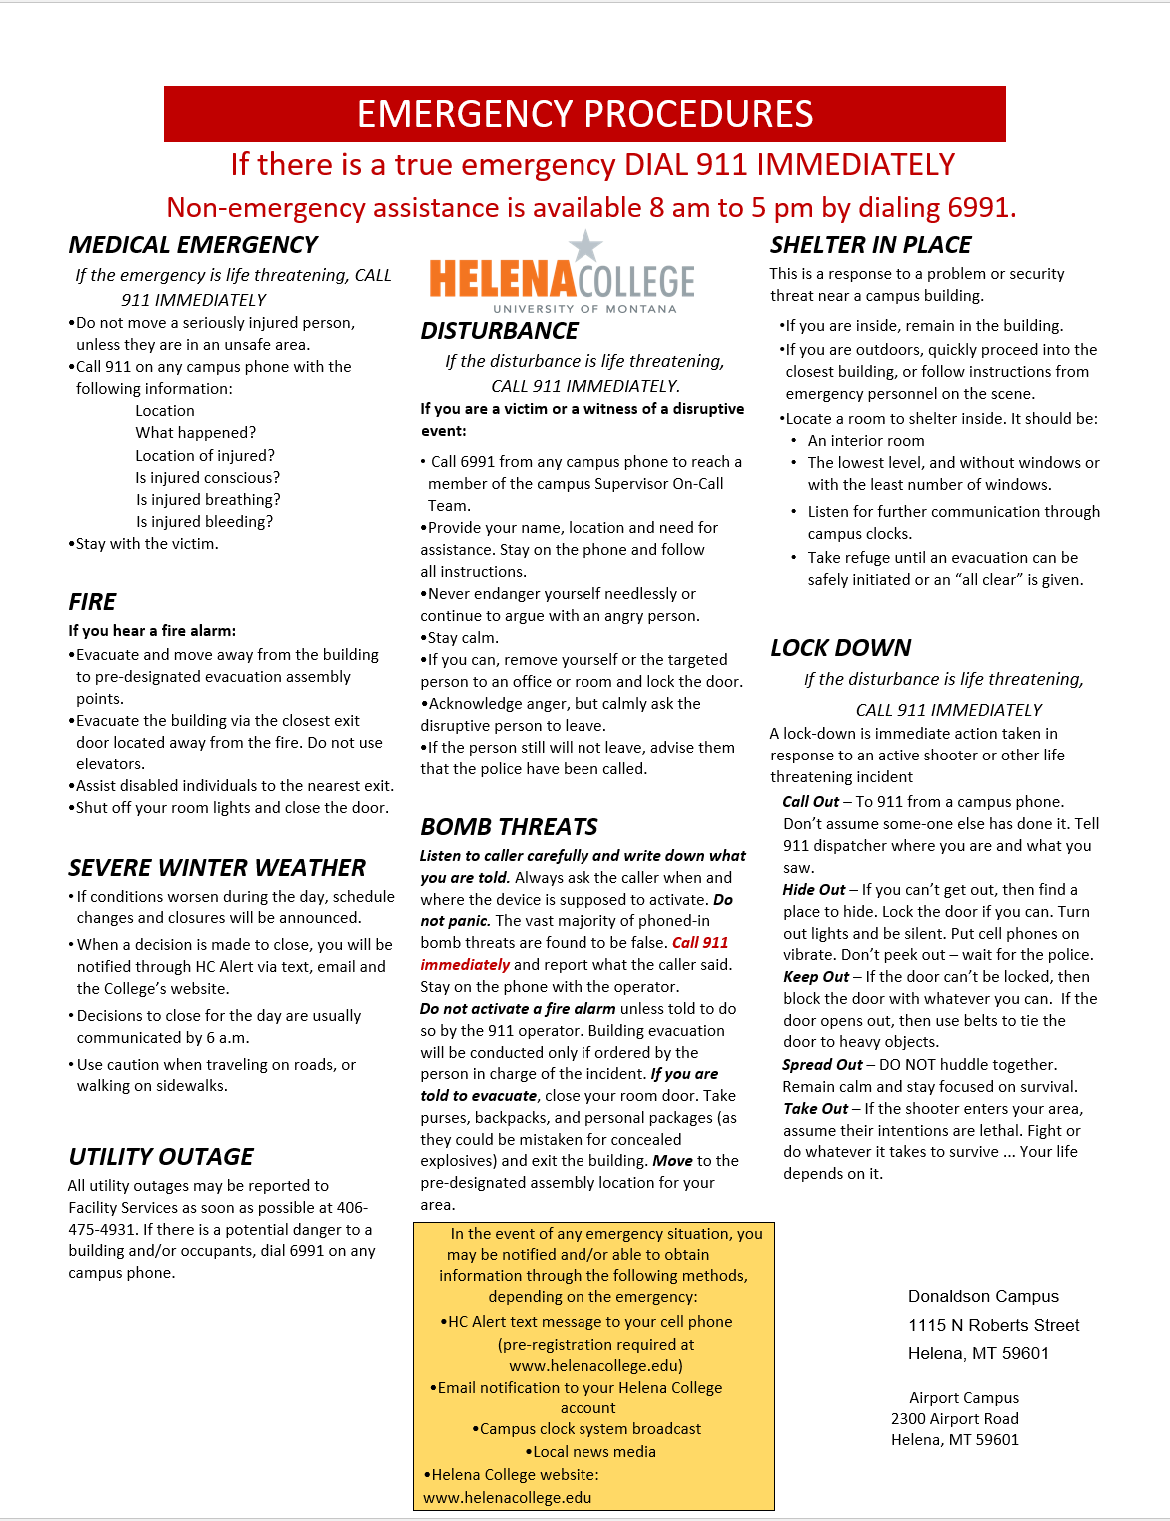 Helena College Emergency Procedures